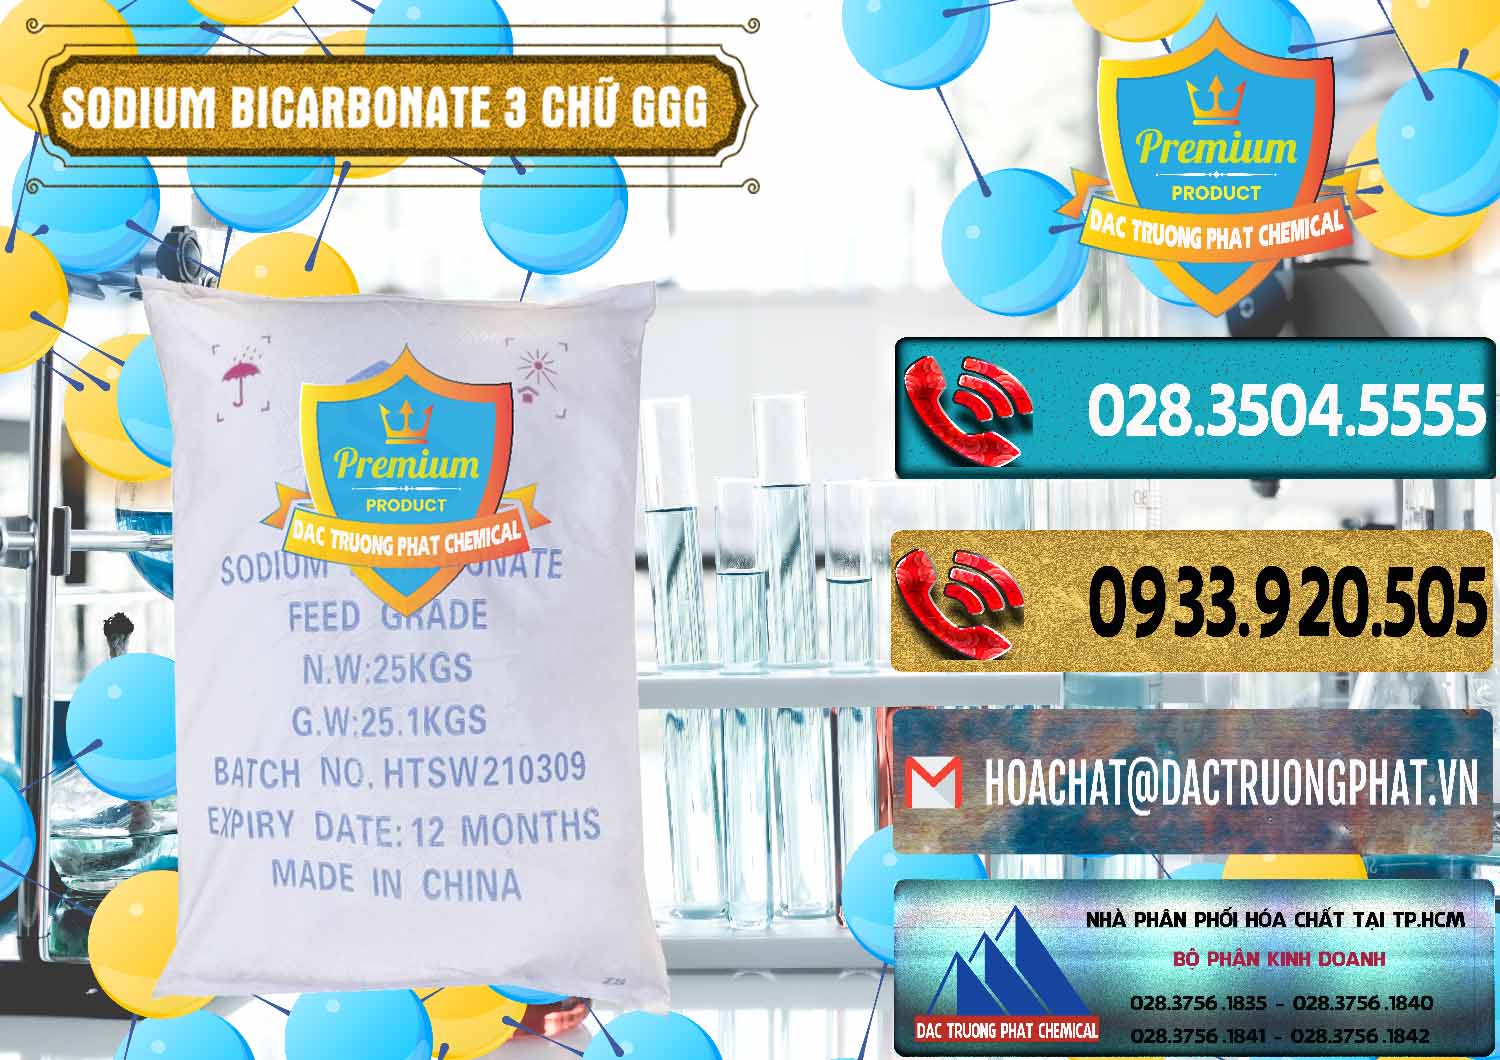 Đơn vị chuyên kinh doanh và bán Sodium Bicarbonate – Bicar NaHCO3 Food Grade 3 Chữ GGG Trung Quốc China - 0259 - Công ty chuyên cung ứng - phân phối hóa chất tại TP.HCM - hoachatdetnhuom.com